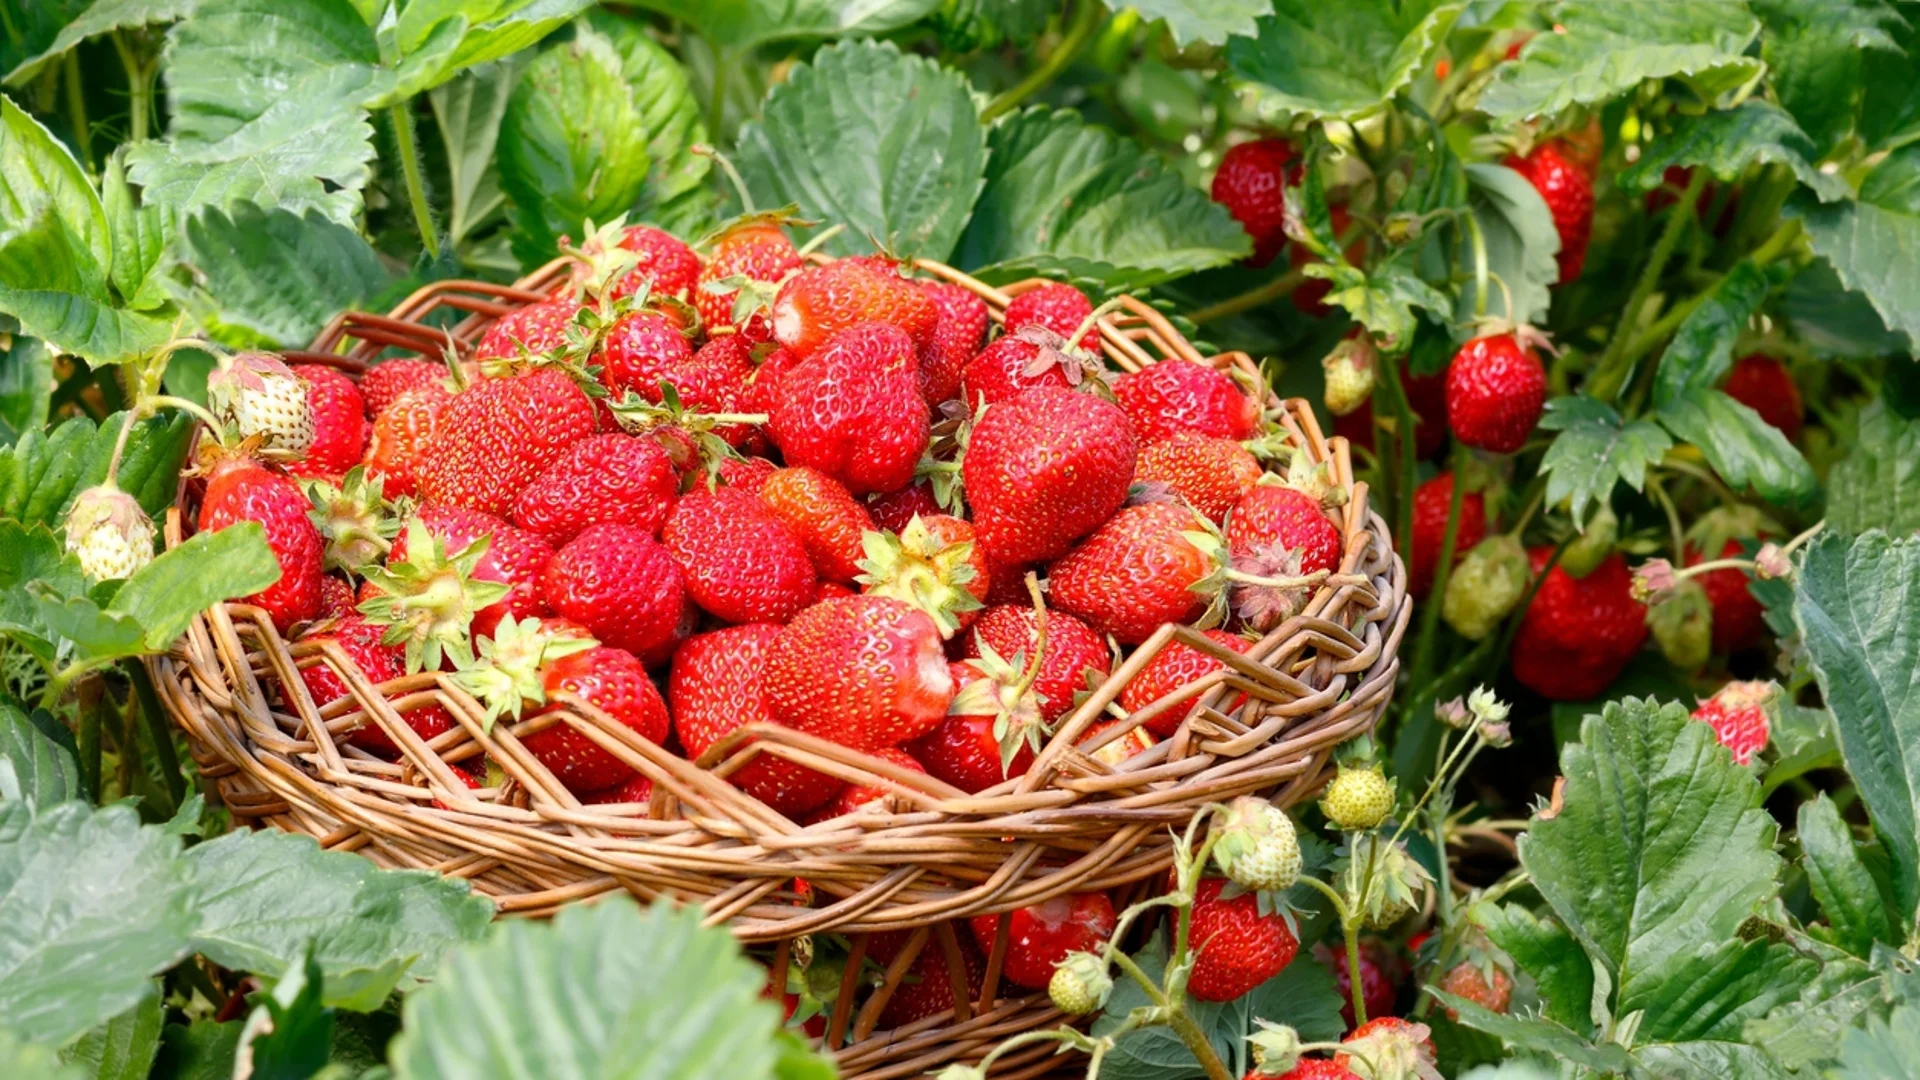 Златни правила за богата реколта от едри и сочни ягоди